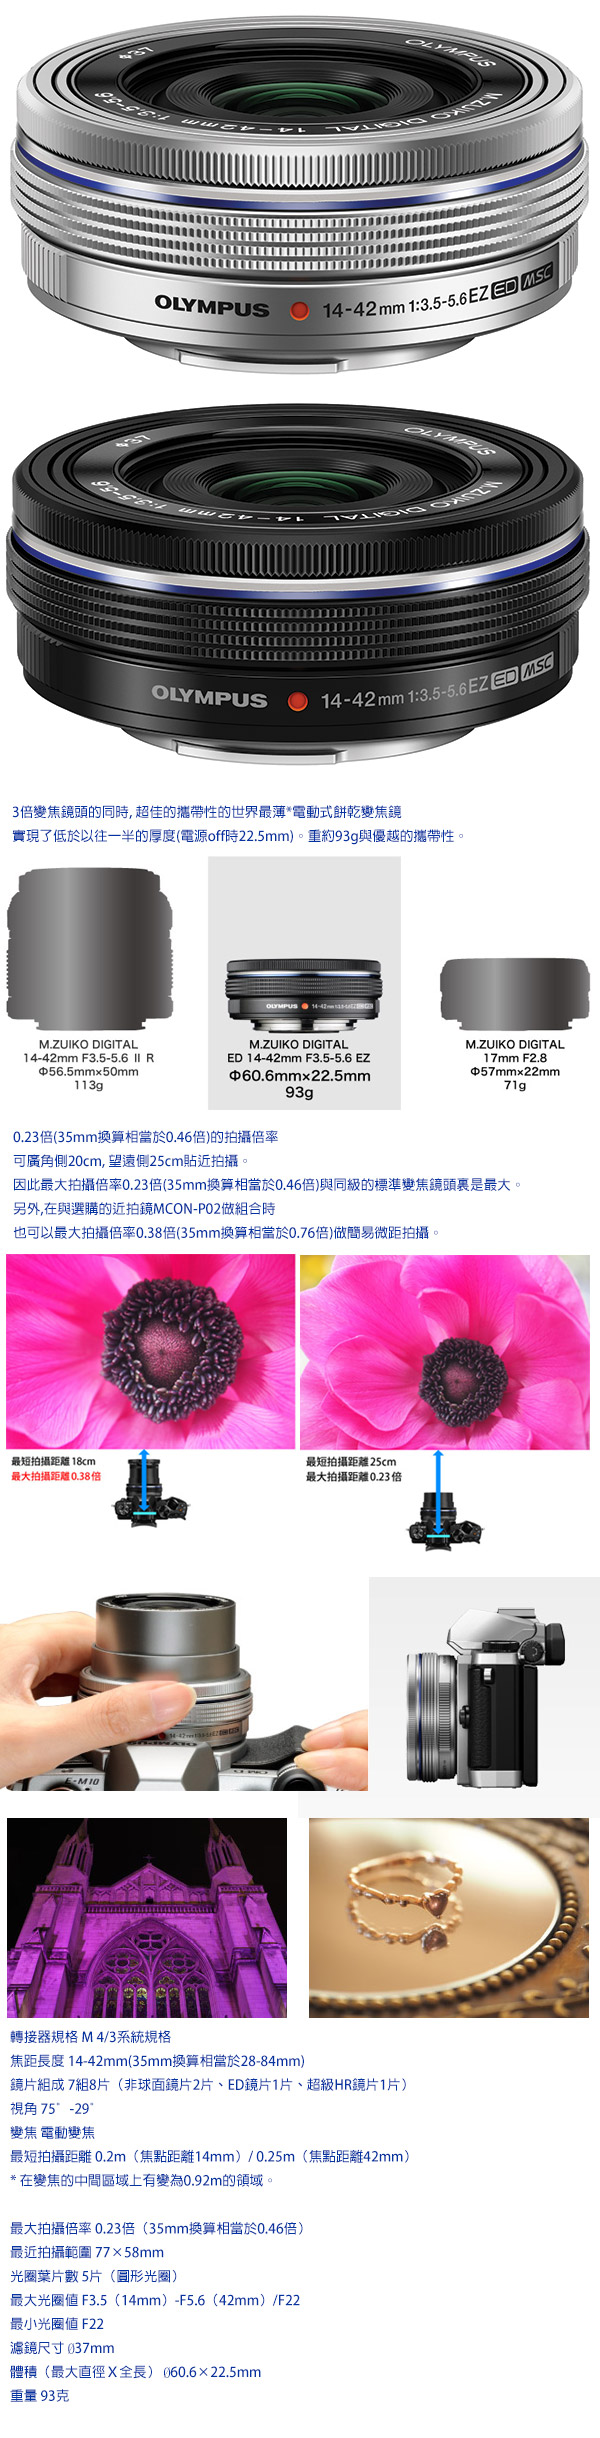 最安値級価格  EZ ED14-42mmF3.5-5.6 DIGITAL 【新品】M.ZUIKO レンズ(ズーム)